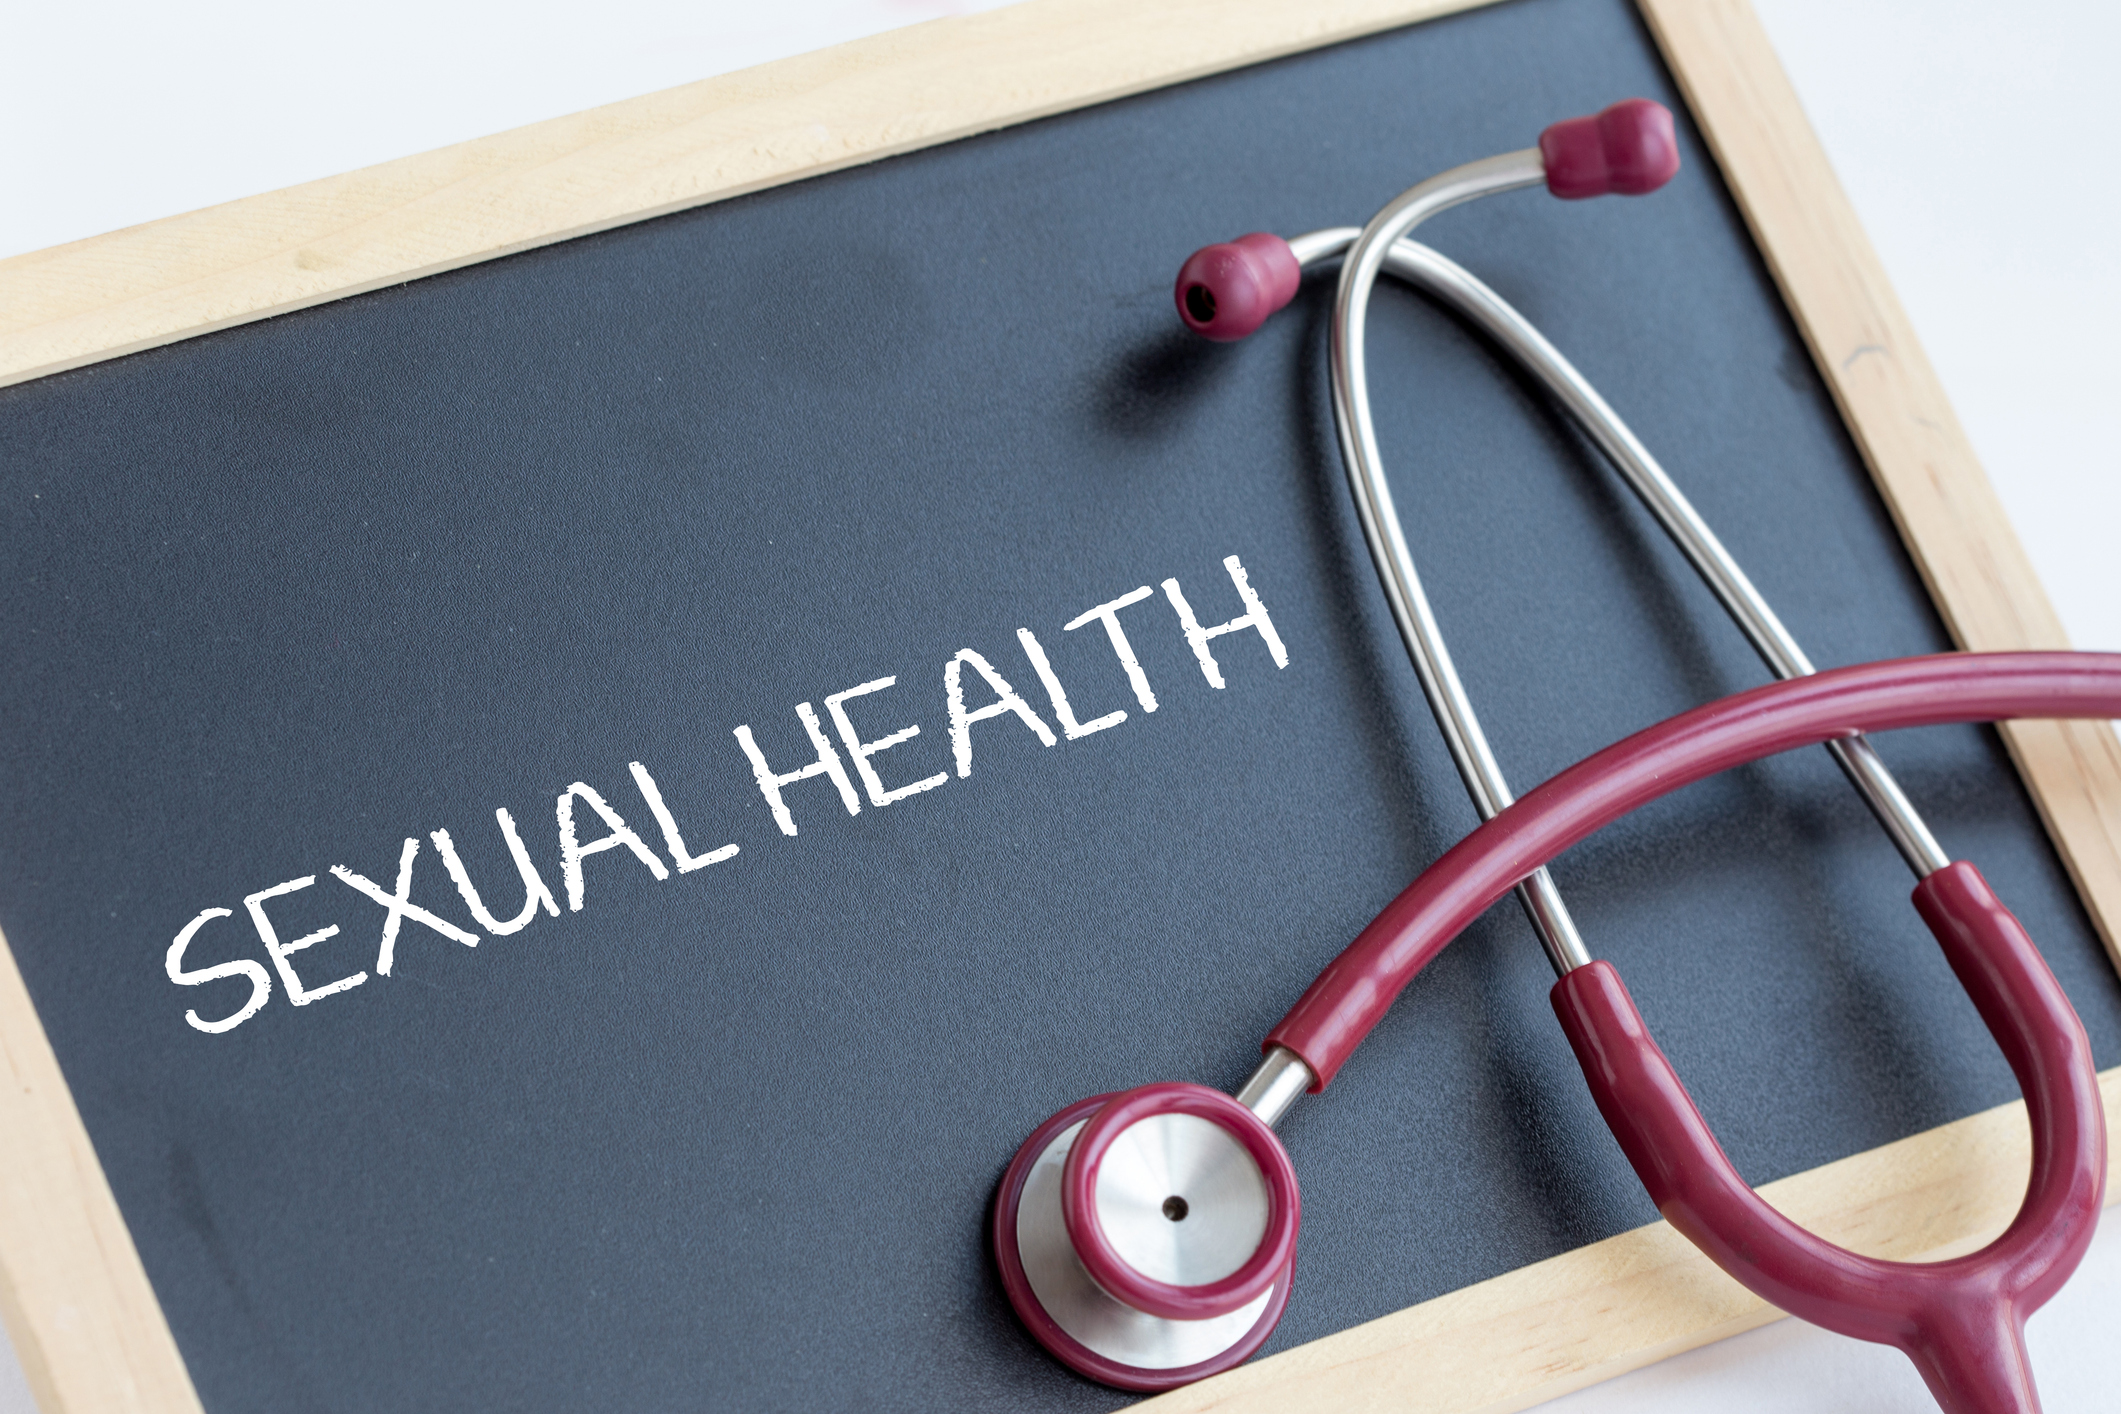 ΕΟΔΥ: Δωρεάν έλεγχος για τα σεξουαλικώς μεταδιδόμενα νοσήματα στην Πολυκλινική Αθηνών 15 με 22 Μαΐου